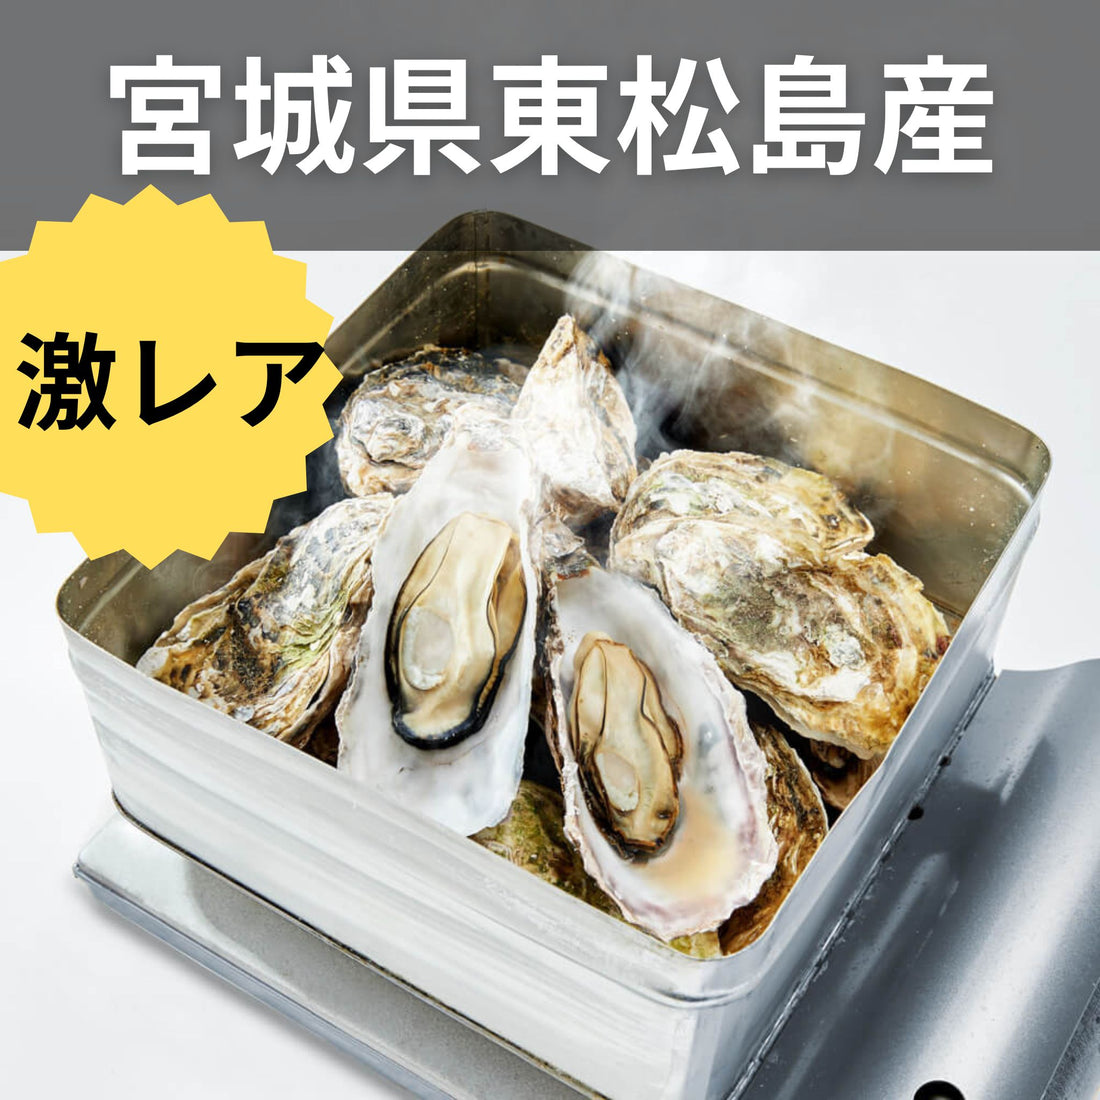 宮城県東松島直送 すごい牡蠣！『後藤水産のカンカン焼きセット』2kg (加熱用) ※送料別